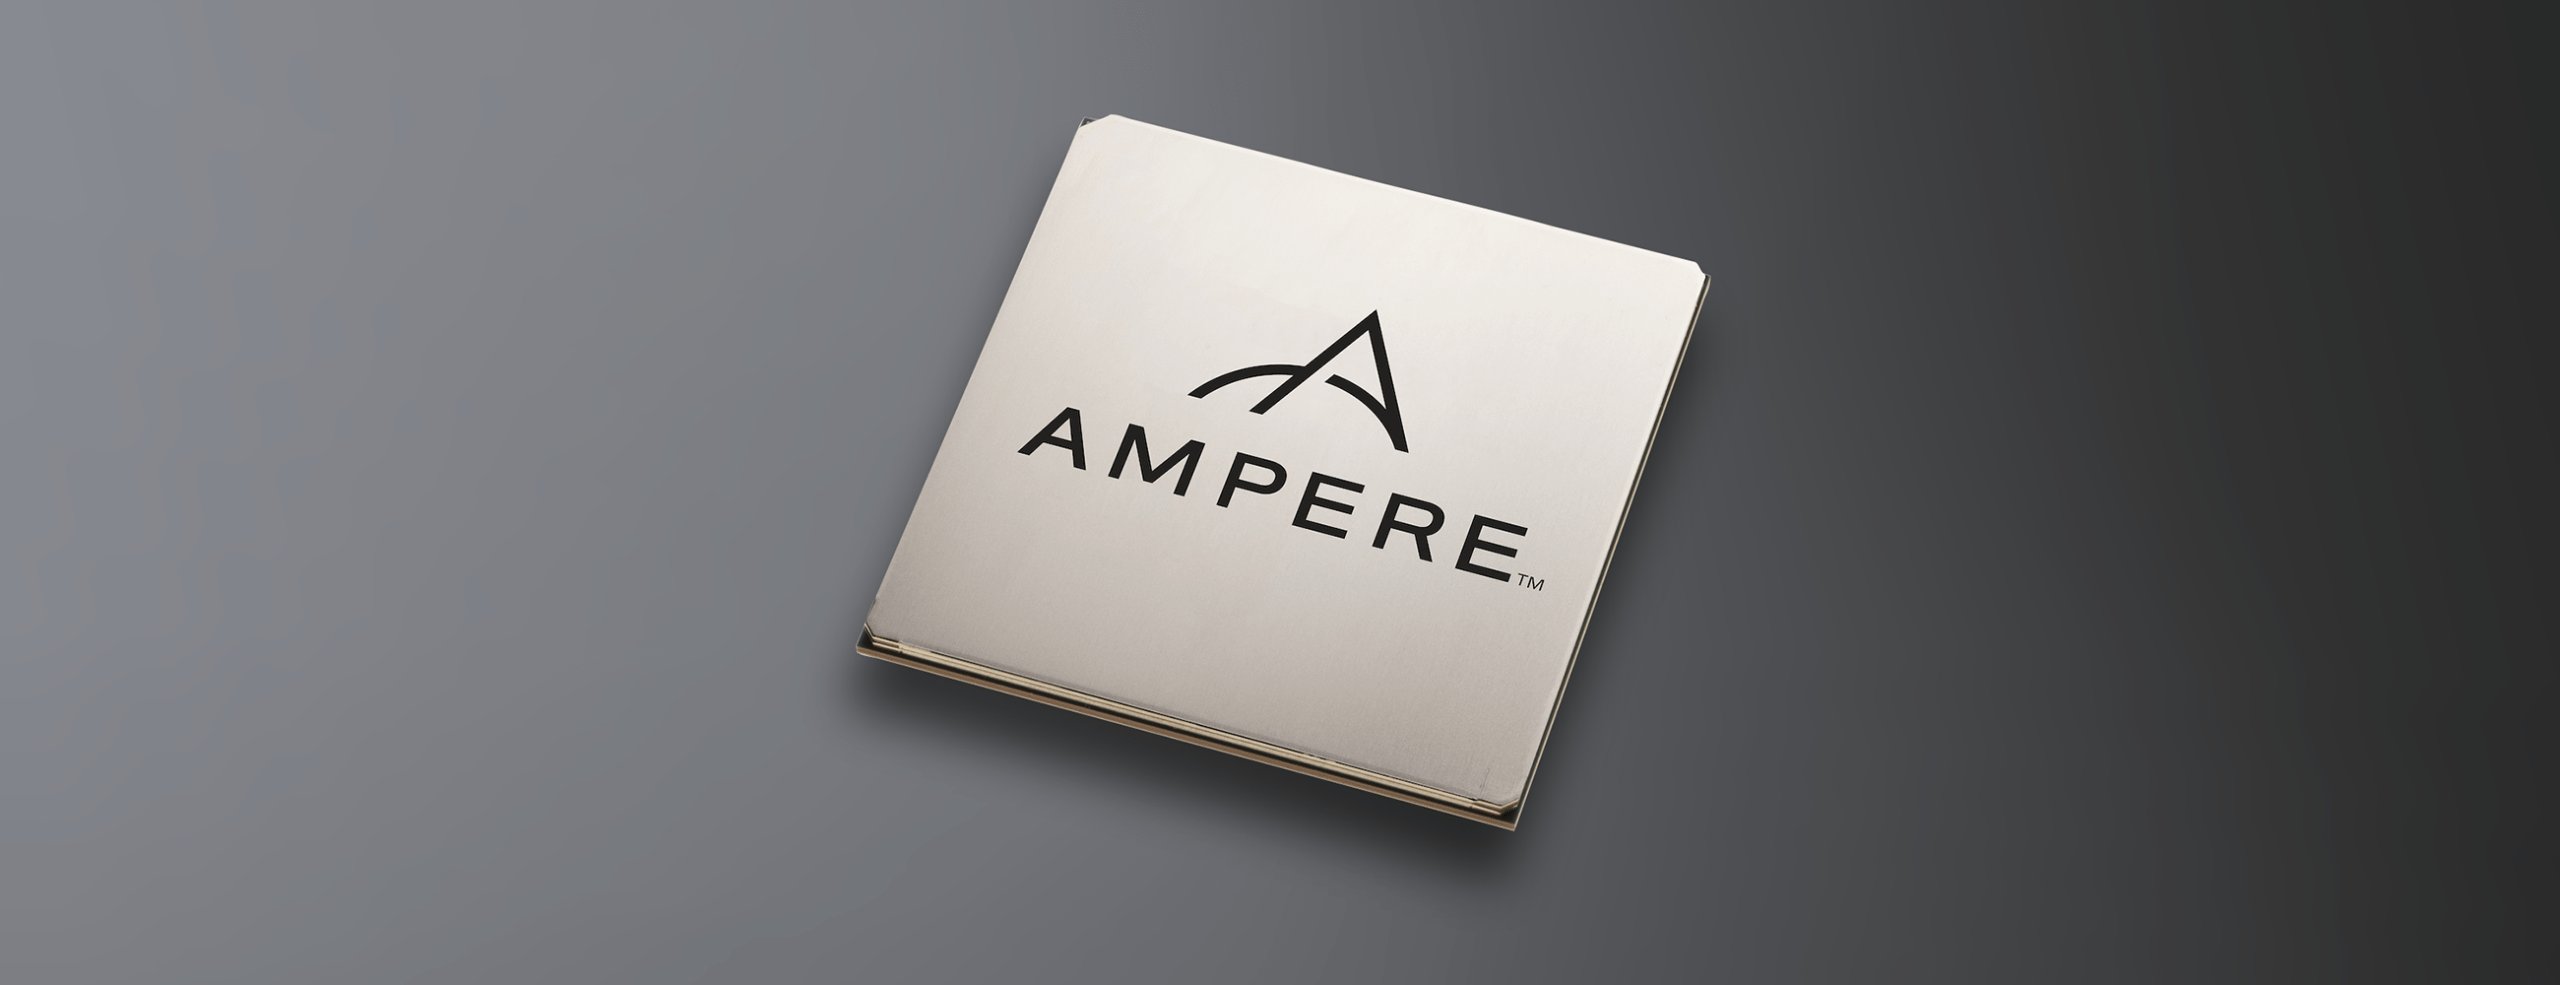 Ampere eMag – nowy serwerowy ARM